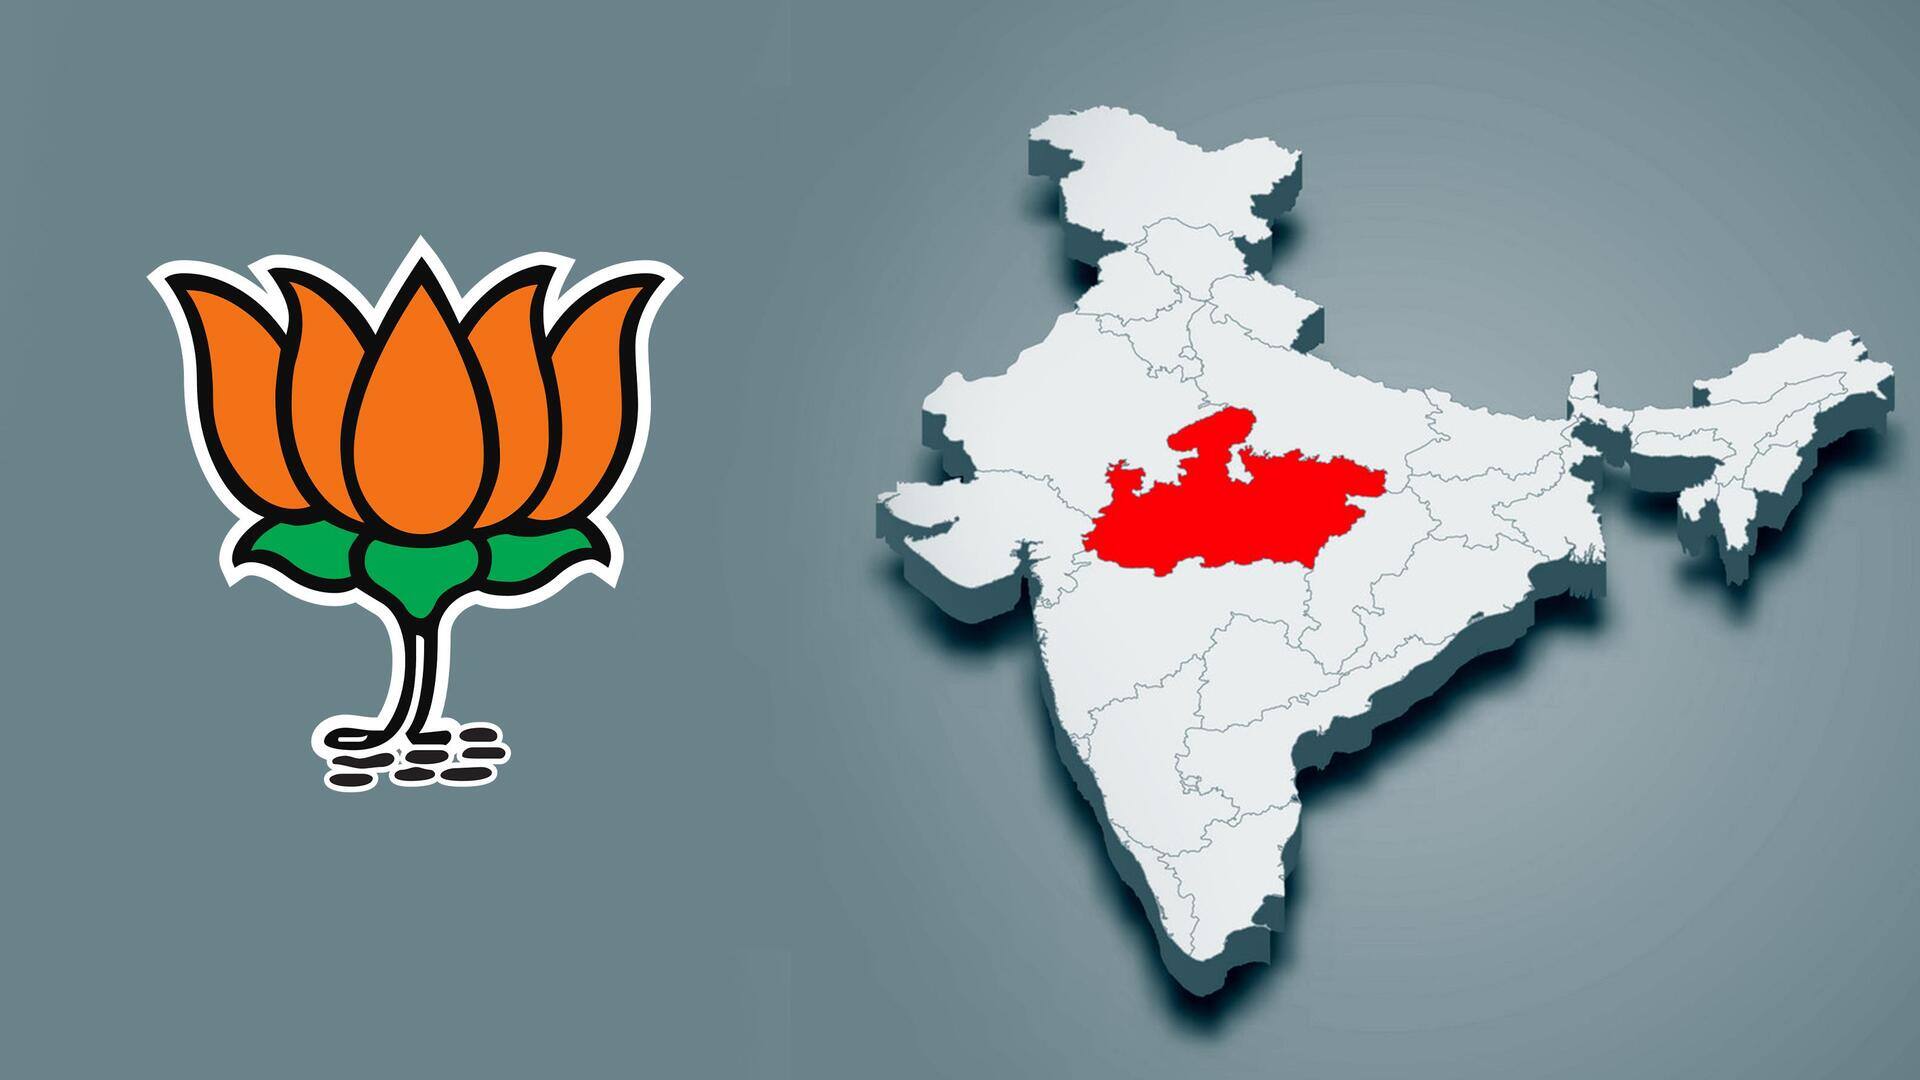 भाजपा ने राजस्थान, मध्य प्रदेश और छत्तीसगढ़ के लिए उम्मीदवारों की सूची जारी की